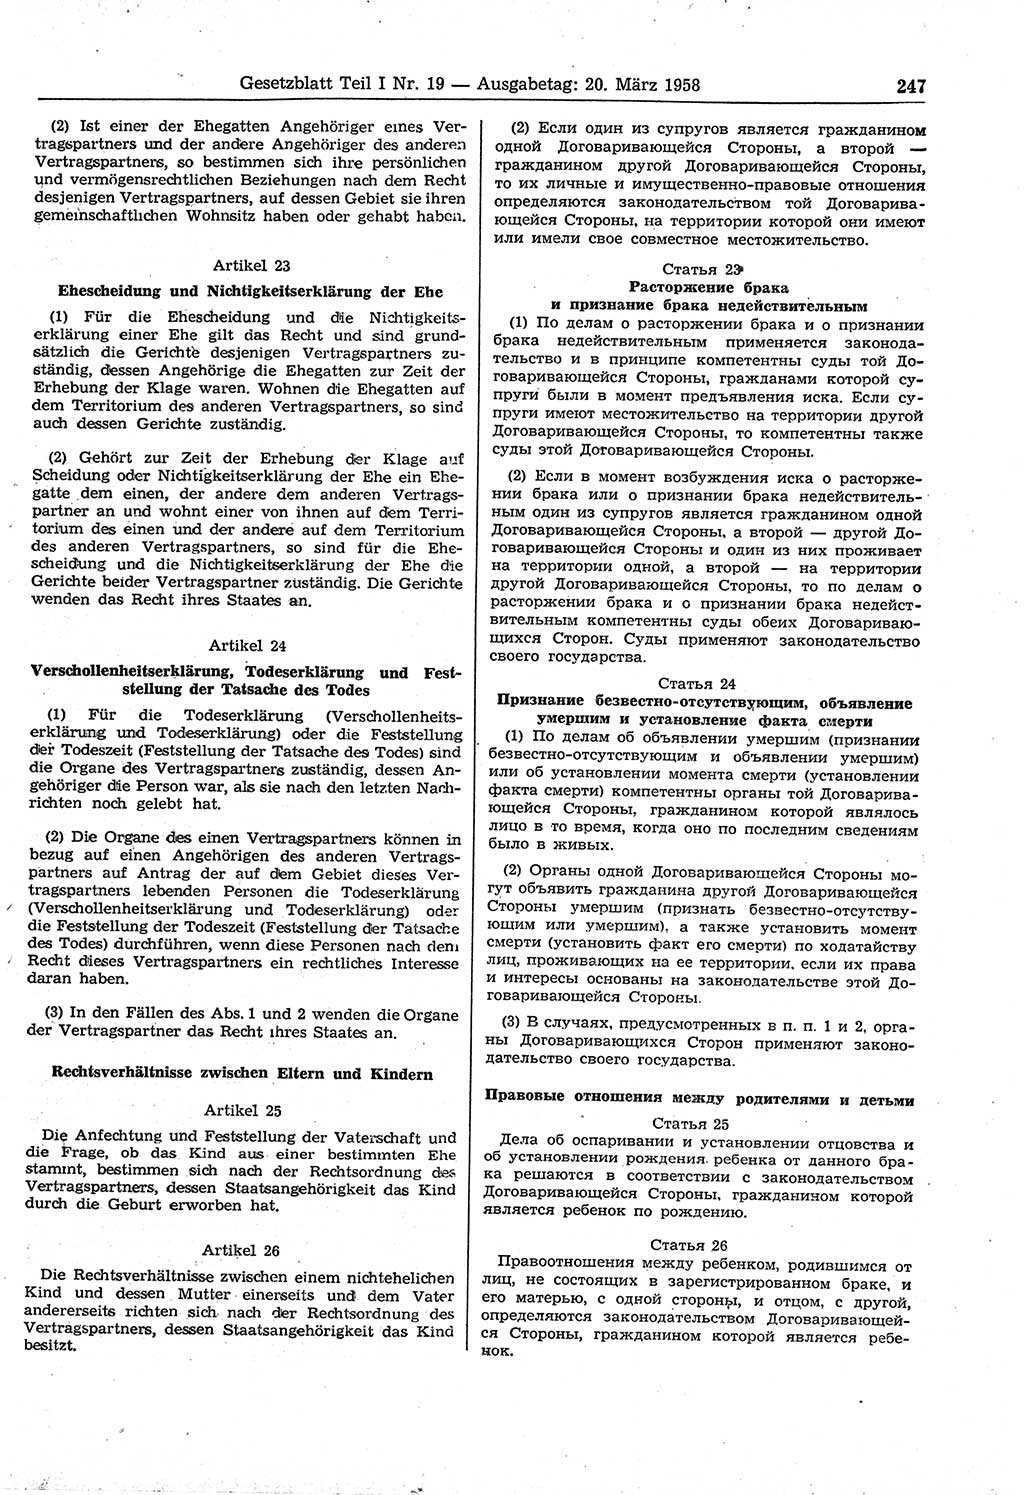 Gesetzblatt (GBl.) der Deutschen Demokratischen Republik (DDR) Teil Ⅰ 1958, Seite 247 (GBl. DDR Ⅰ 1958, S. 247)